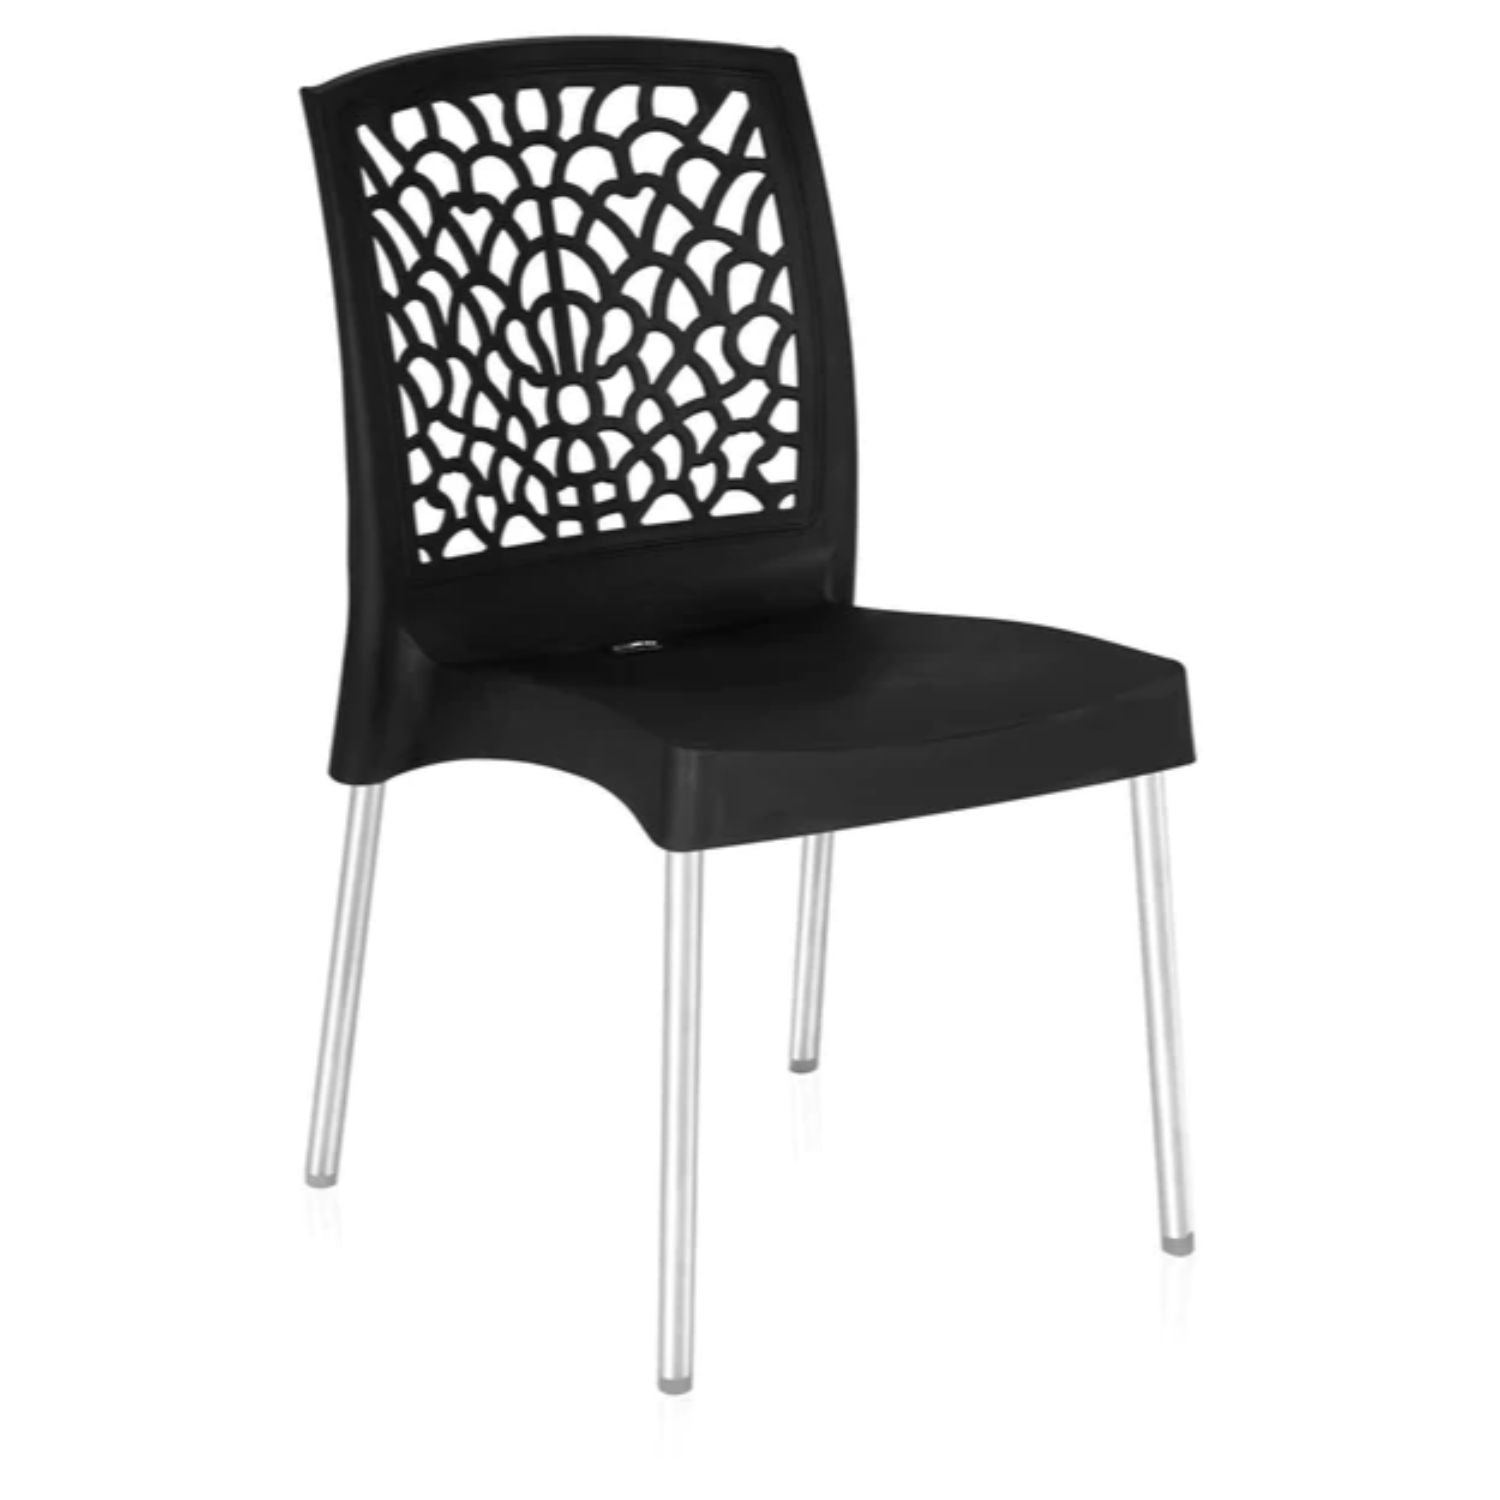 Nilkamal Novella 19 Stainless Steel Chair (Iron Black)